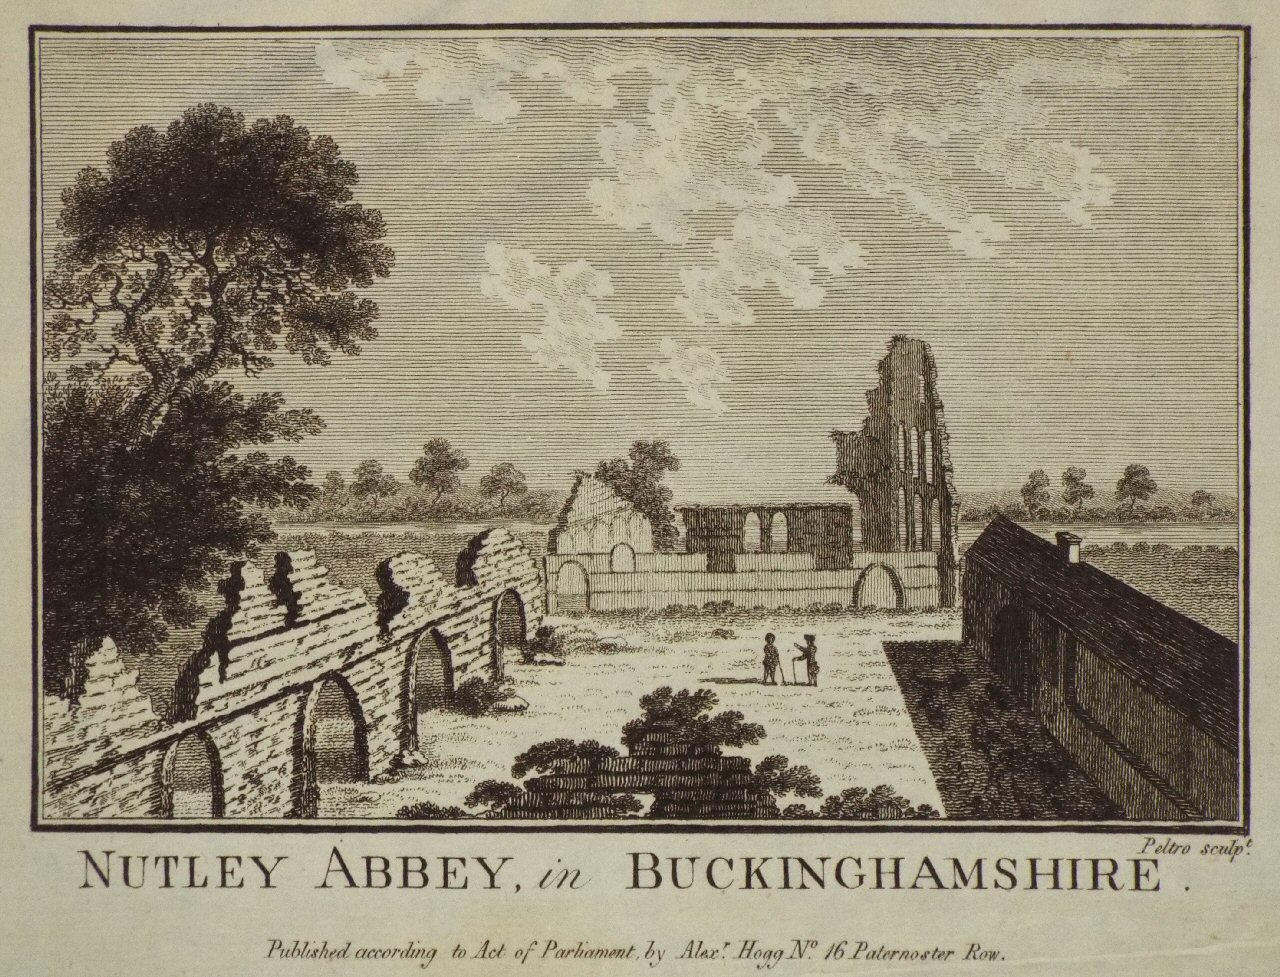 Print - Nutley Abbey, in Buckinghamshire. - 